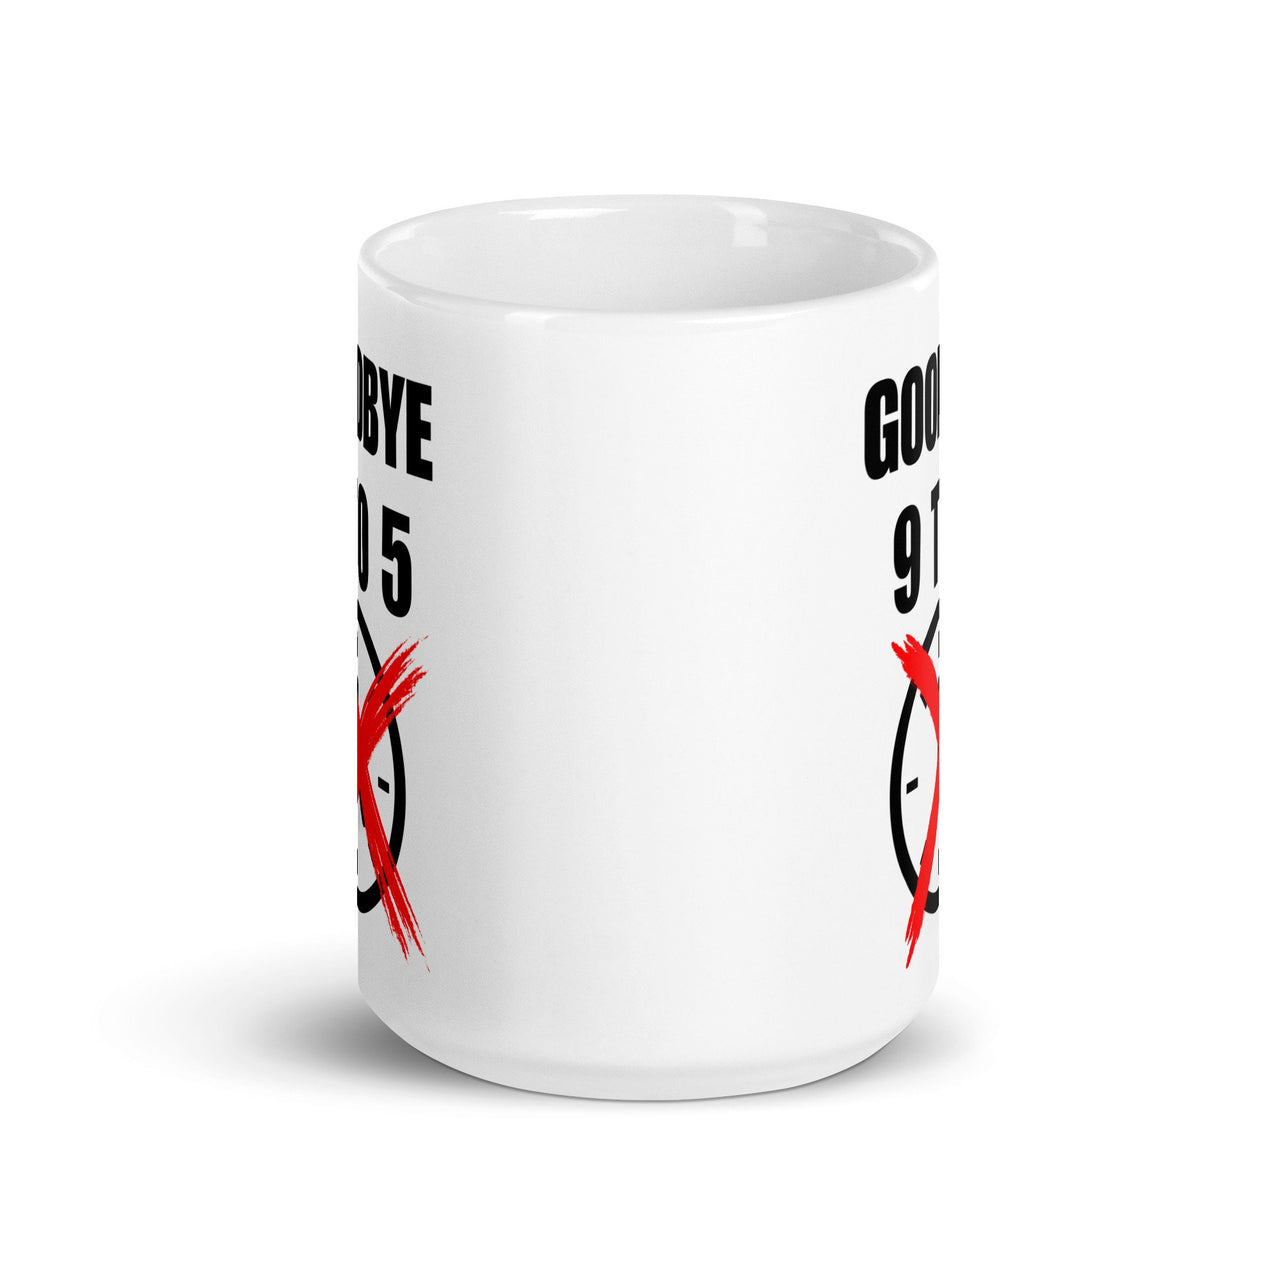 Goodbye 9-5 Entrepreneur-Solopreneur-Business Owner Glossy White Mug